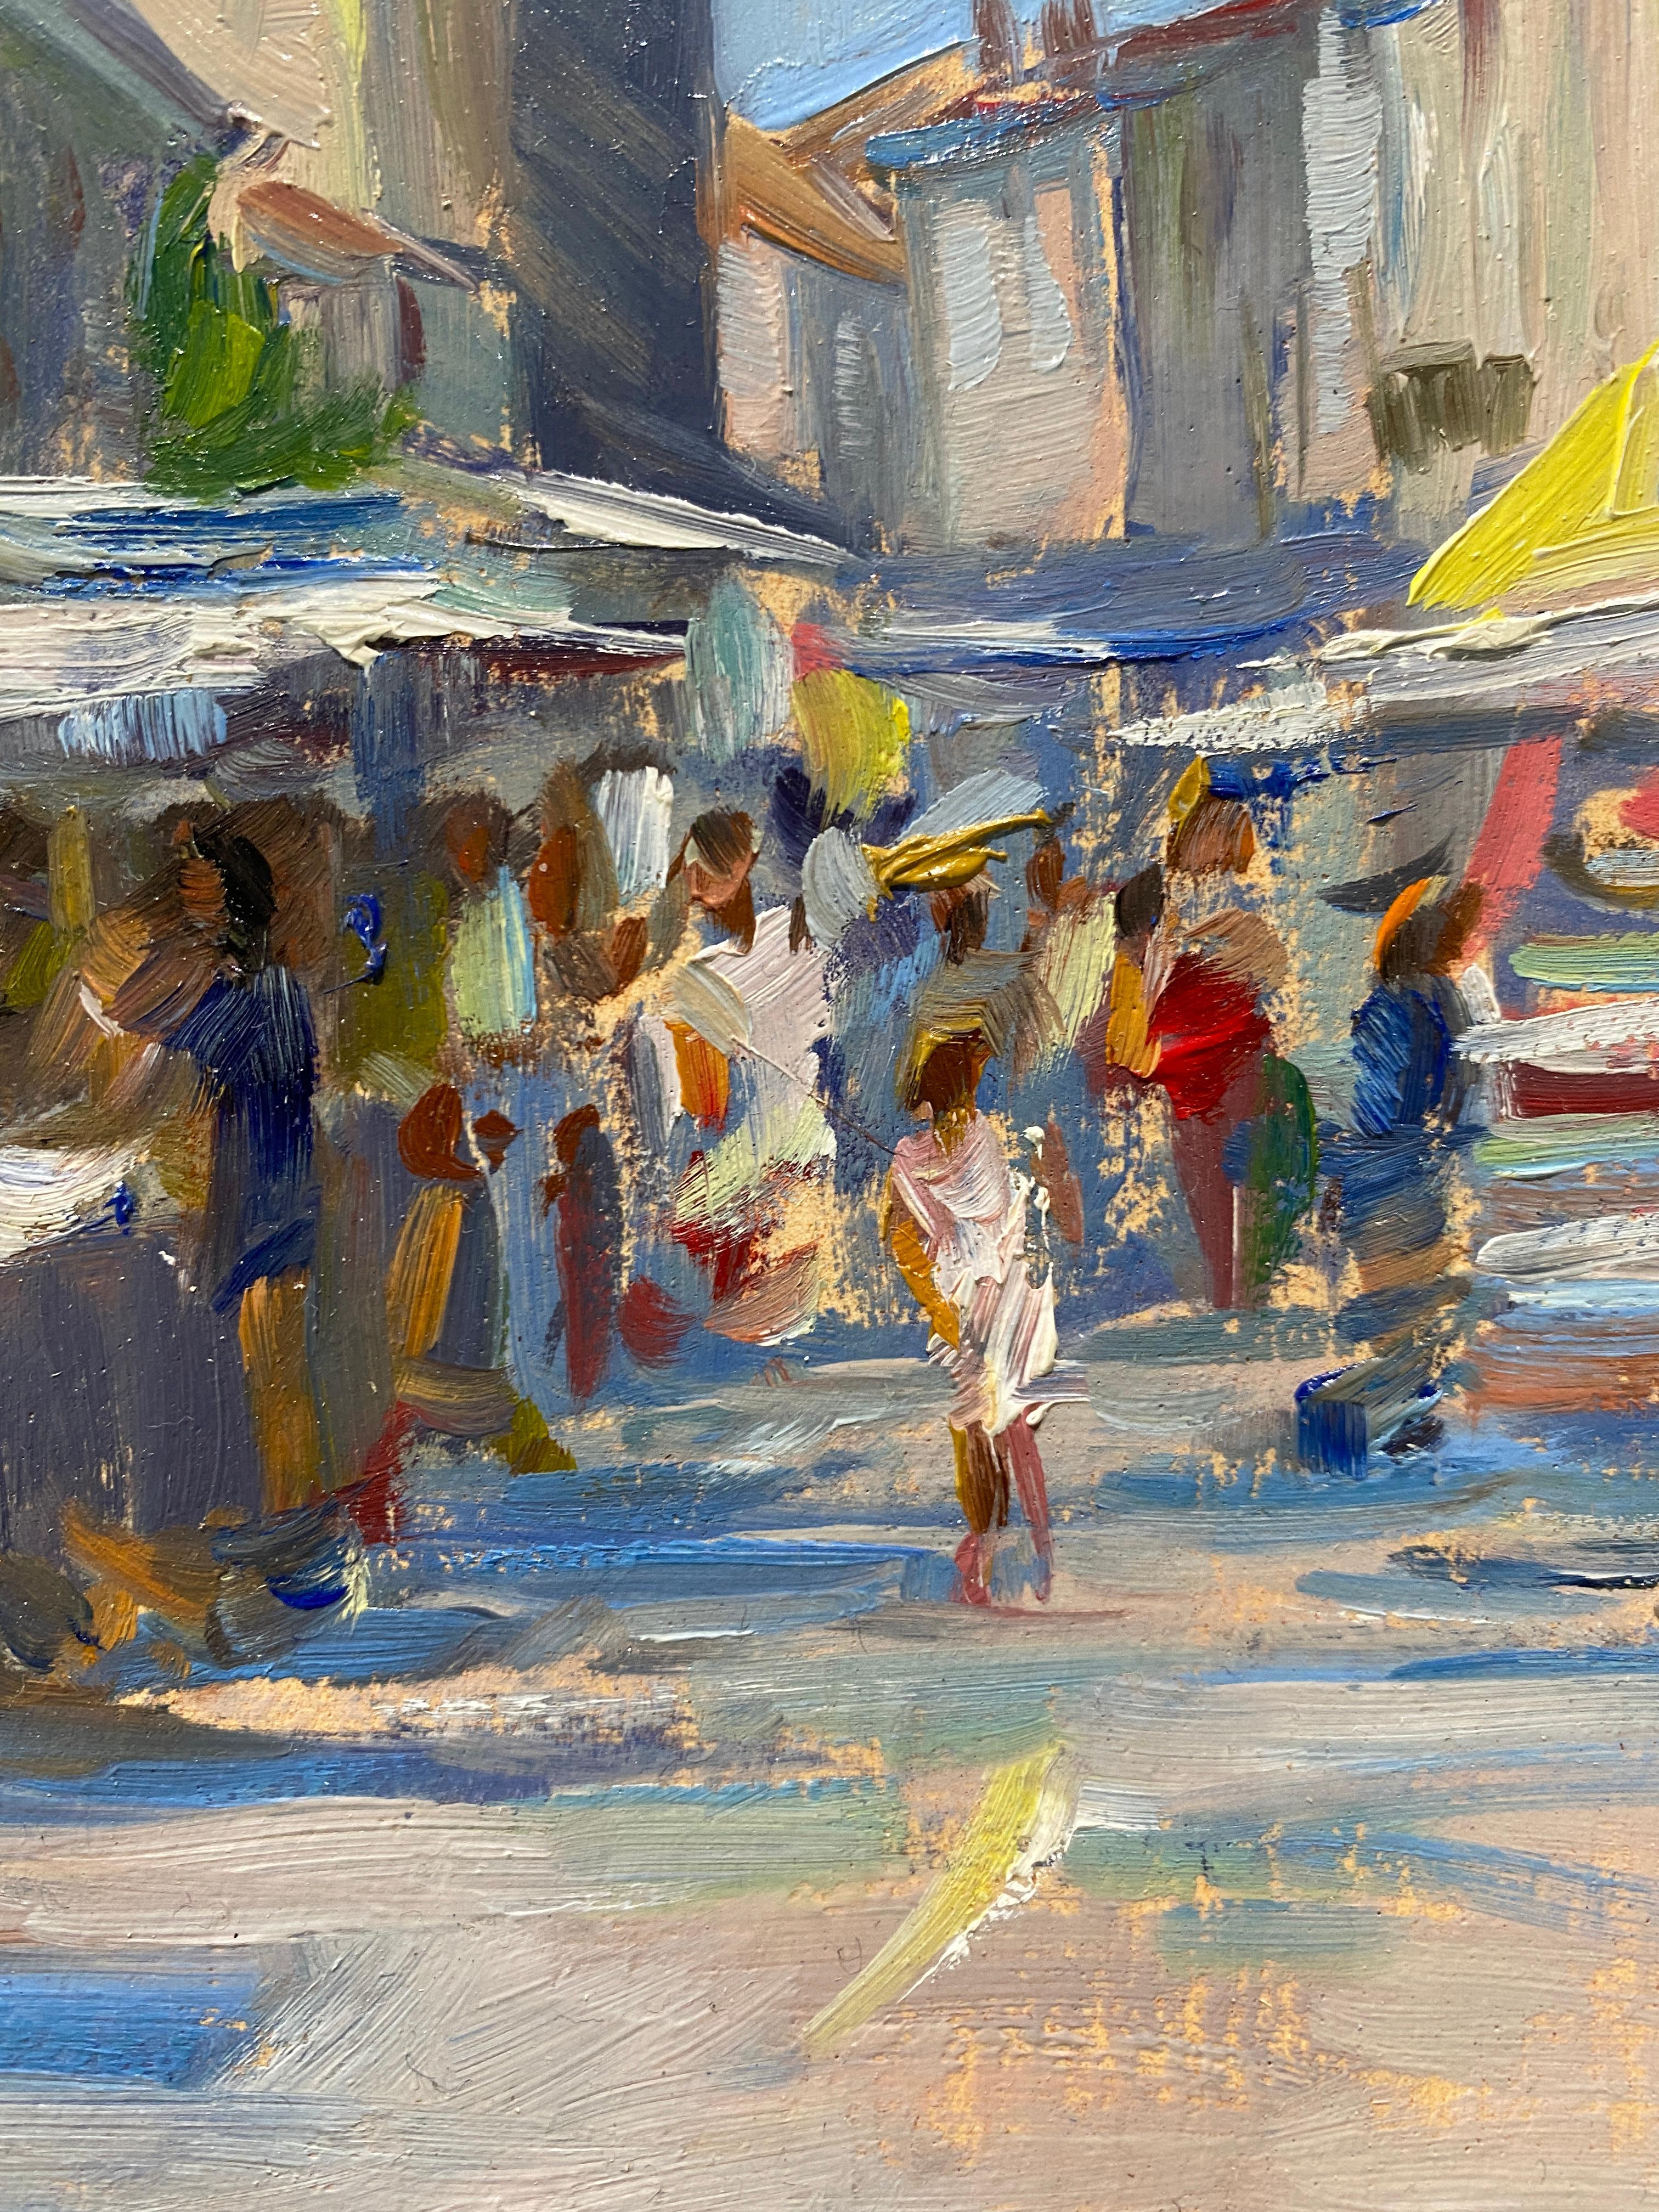 Gemalt en plein air in Lectoure, Frankreich. Ein Ölgemälde, das einen belebten Markt in der Altstadt zeigt.  

Abmessungen des Gemäldes: 12 x 8 Zoll
Gerahmte Abmessungen: 17.5 x 13,5 Zoll


Künstler Bio
Tina Orsolic Dalessio ist eine figurative